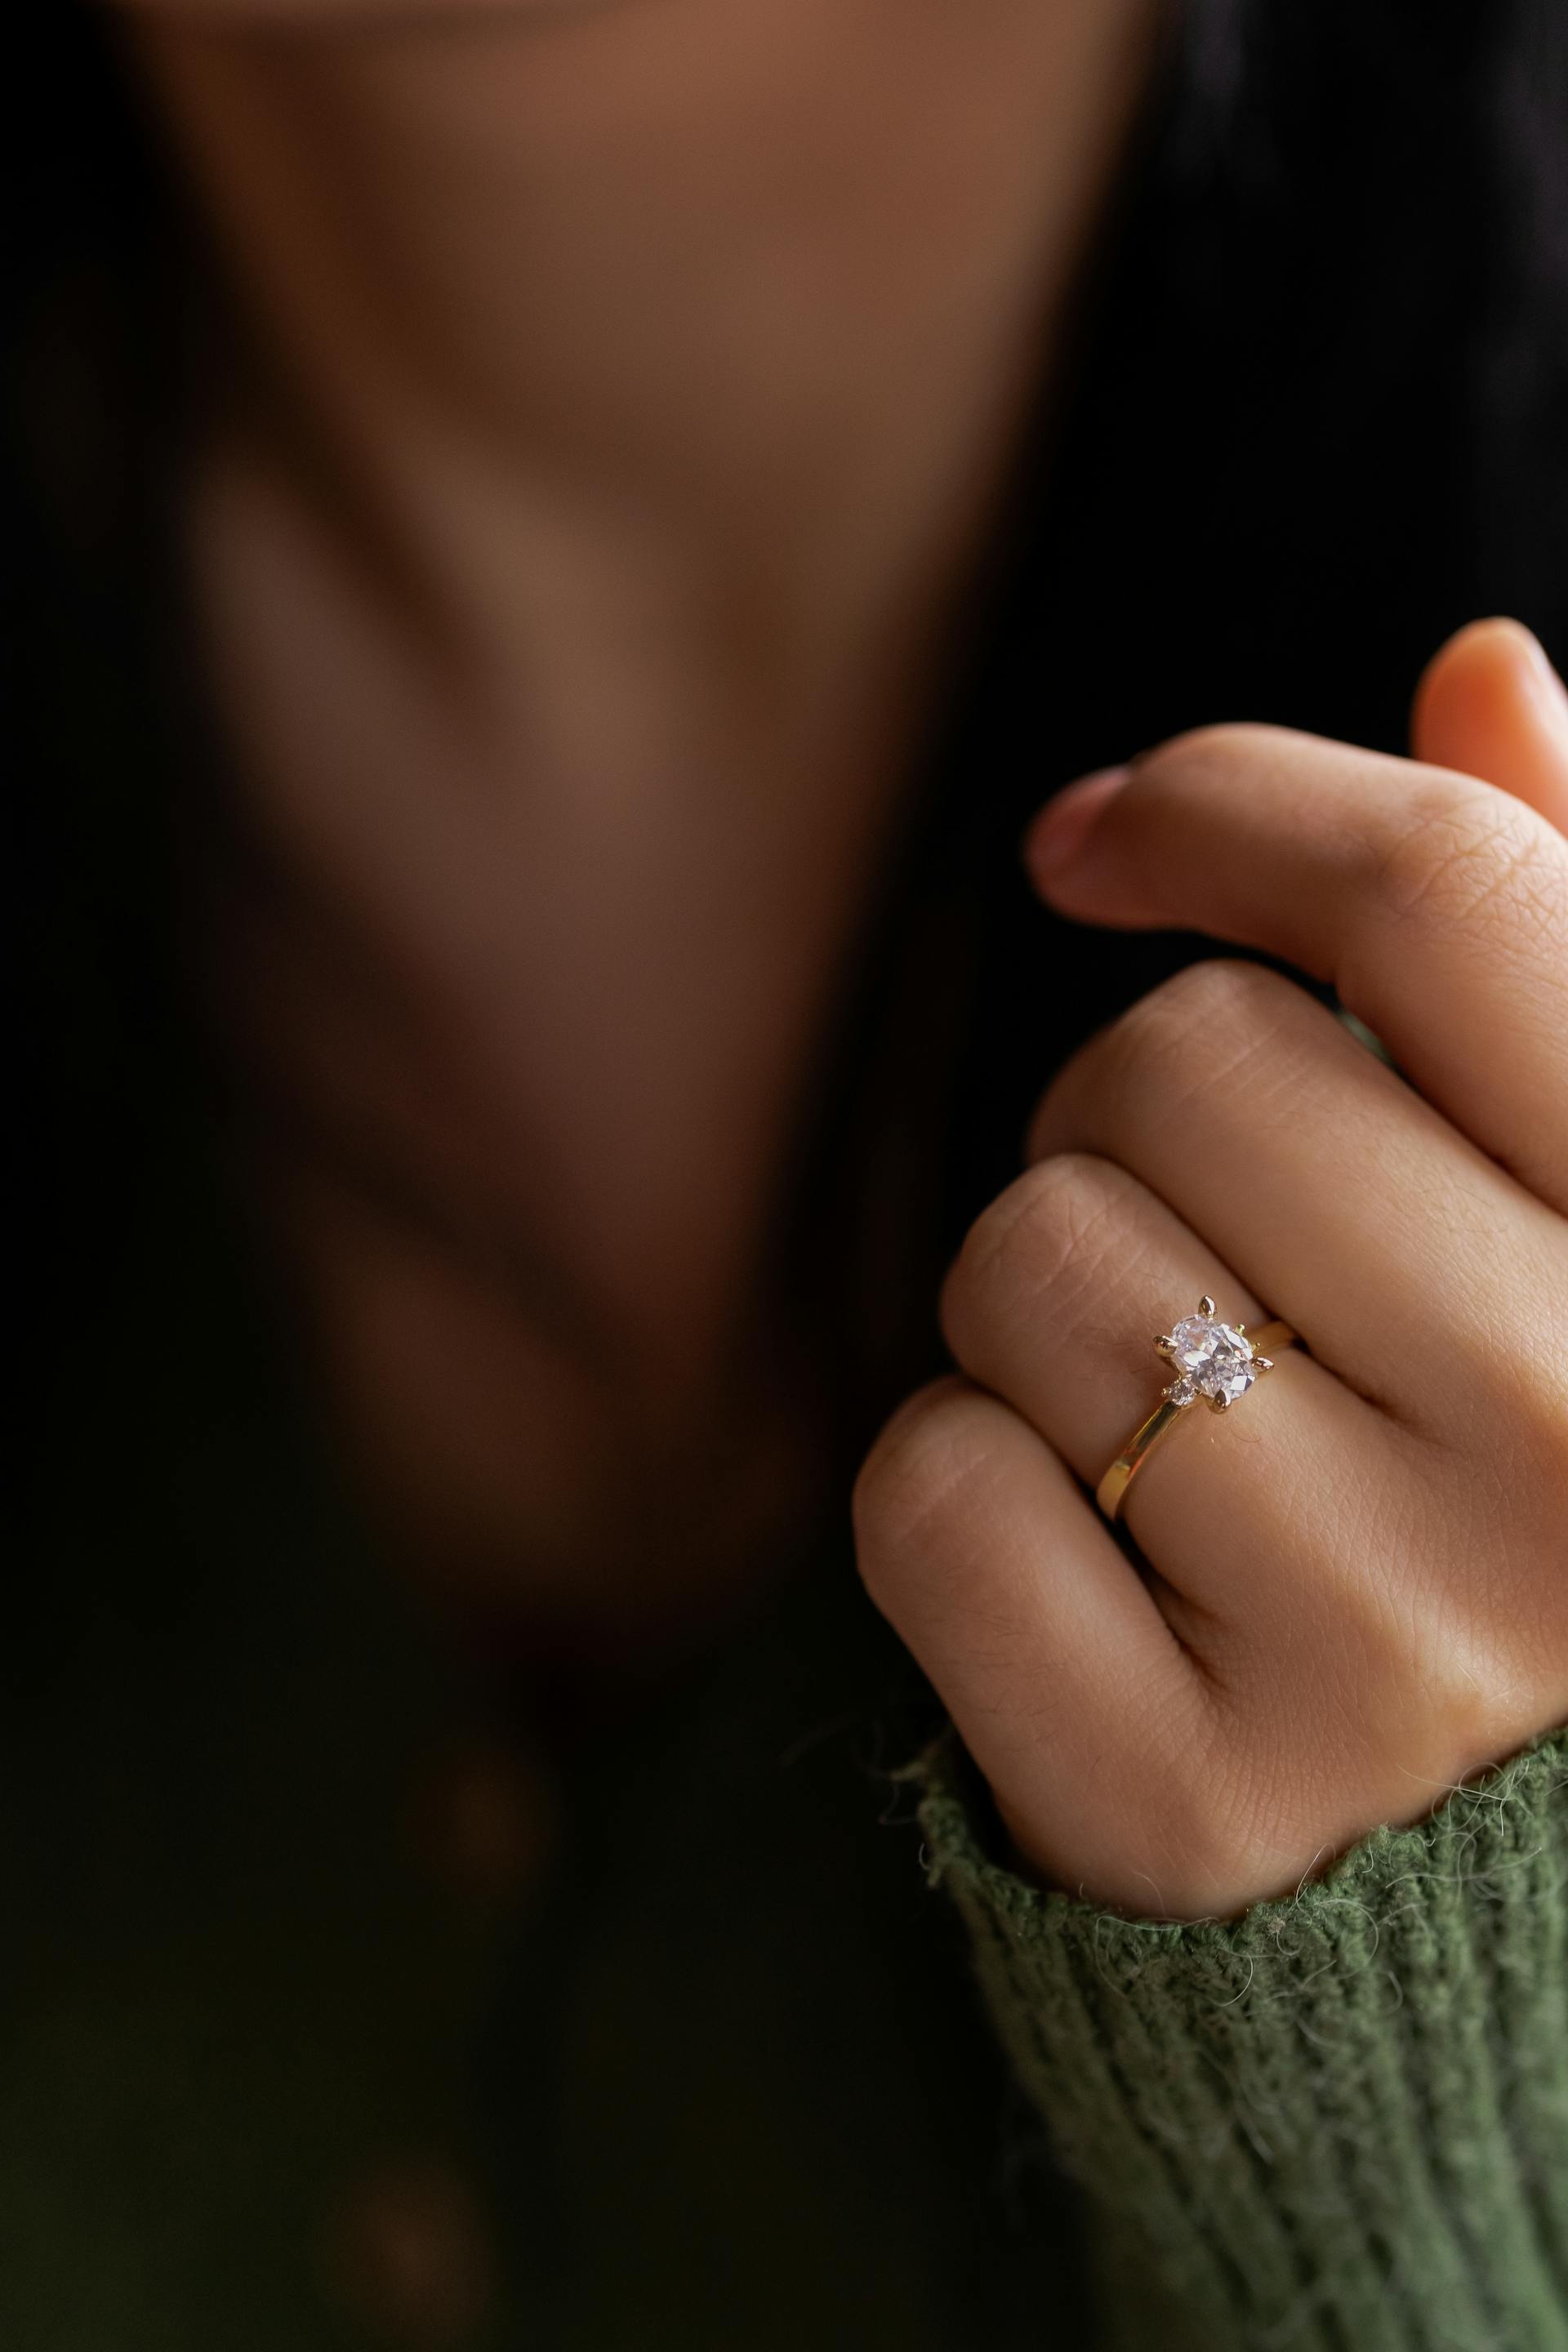 Une bague de fiançailles sur la main d'une femme | Source : Pexels